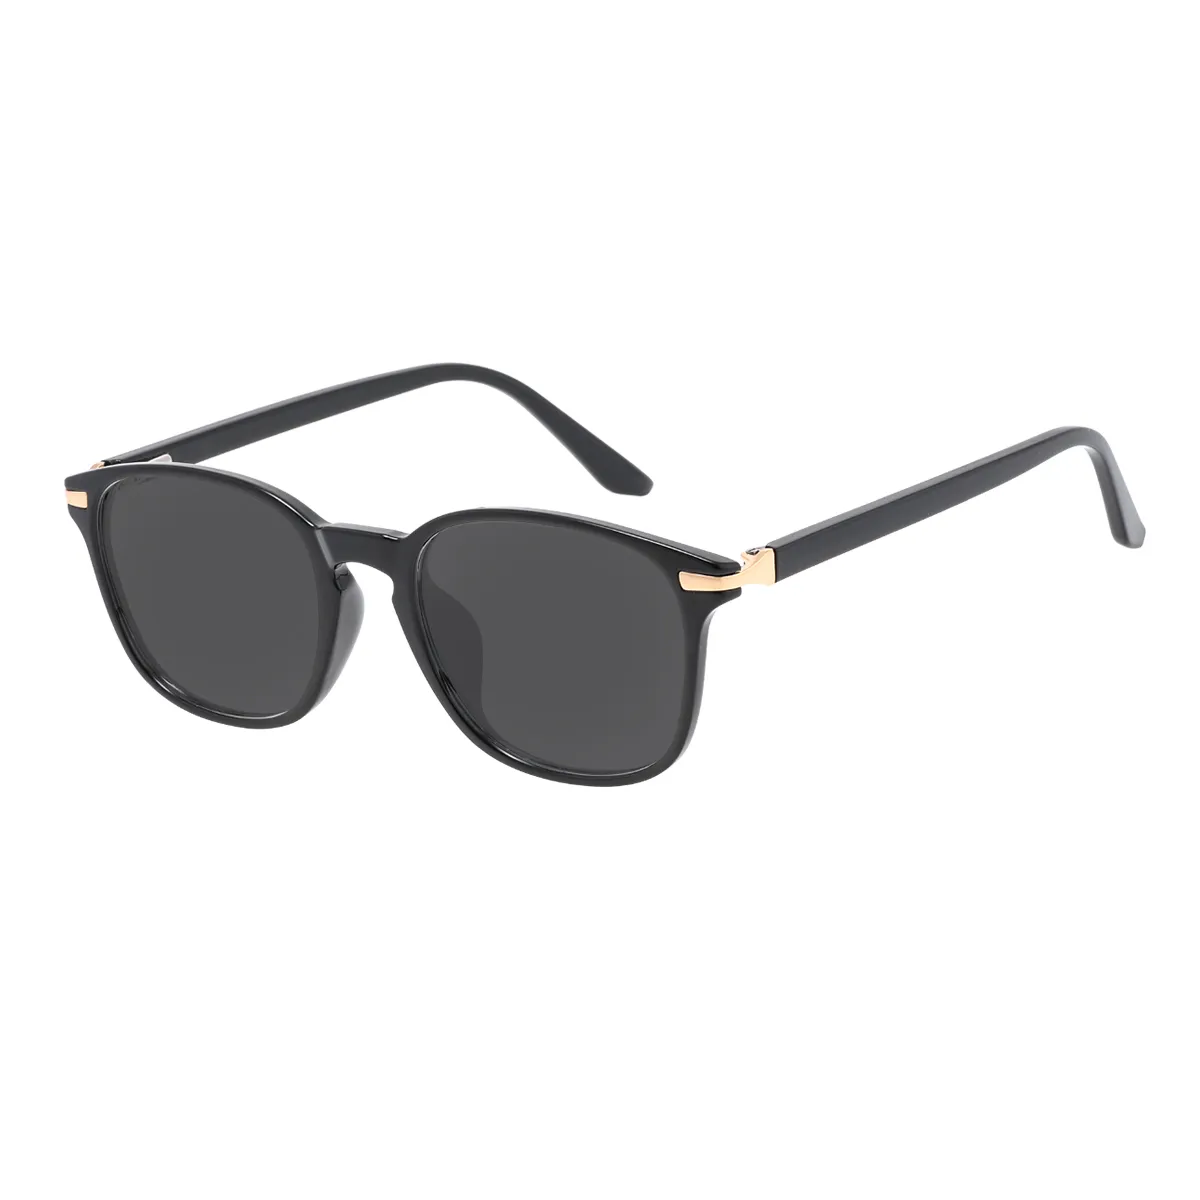 Emerson - Square Black Sunglasses for Women